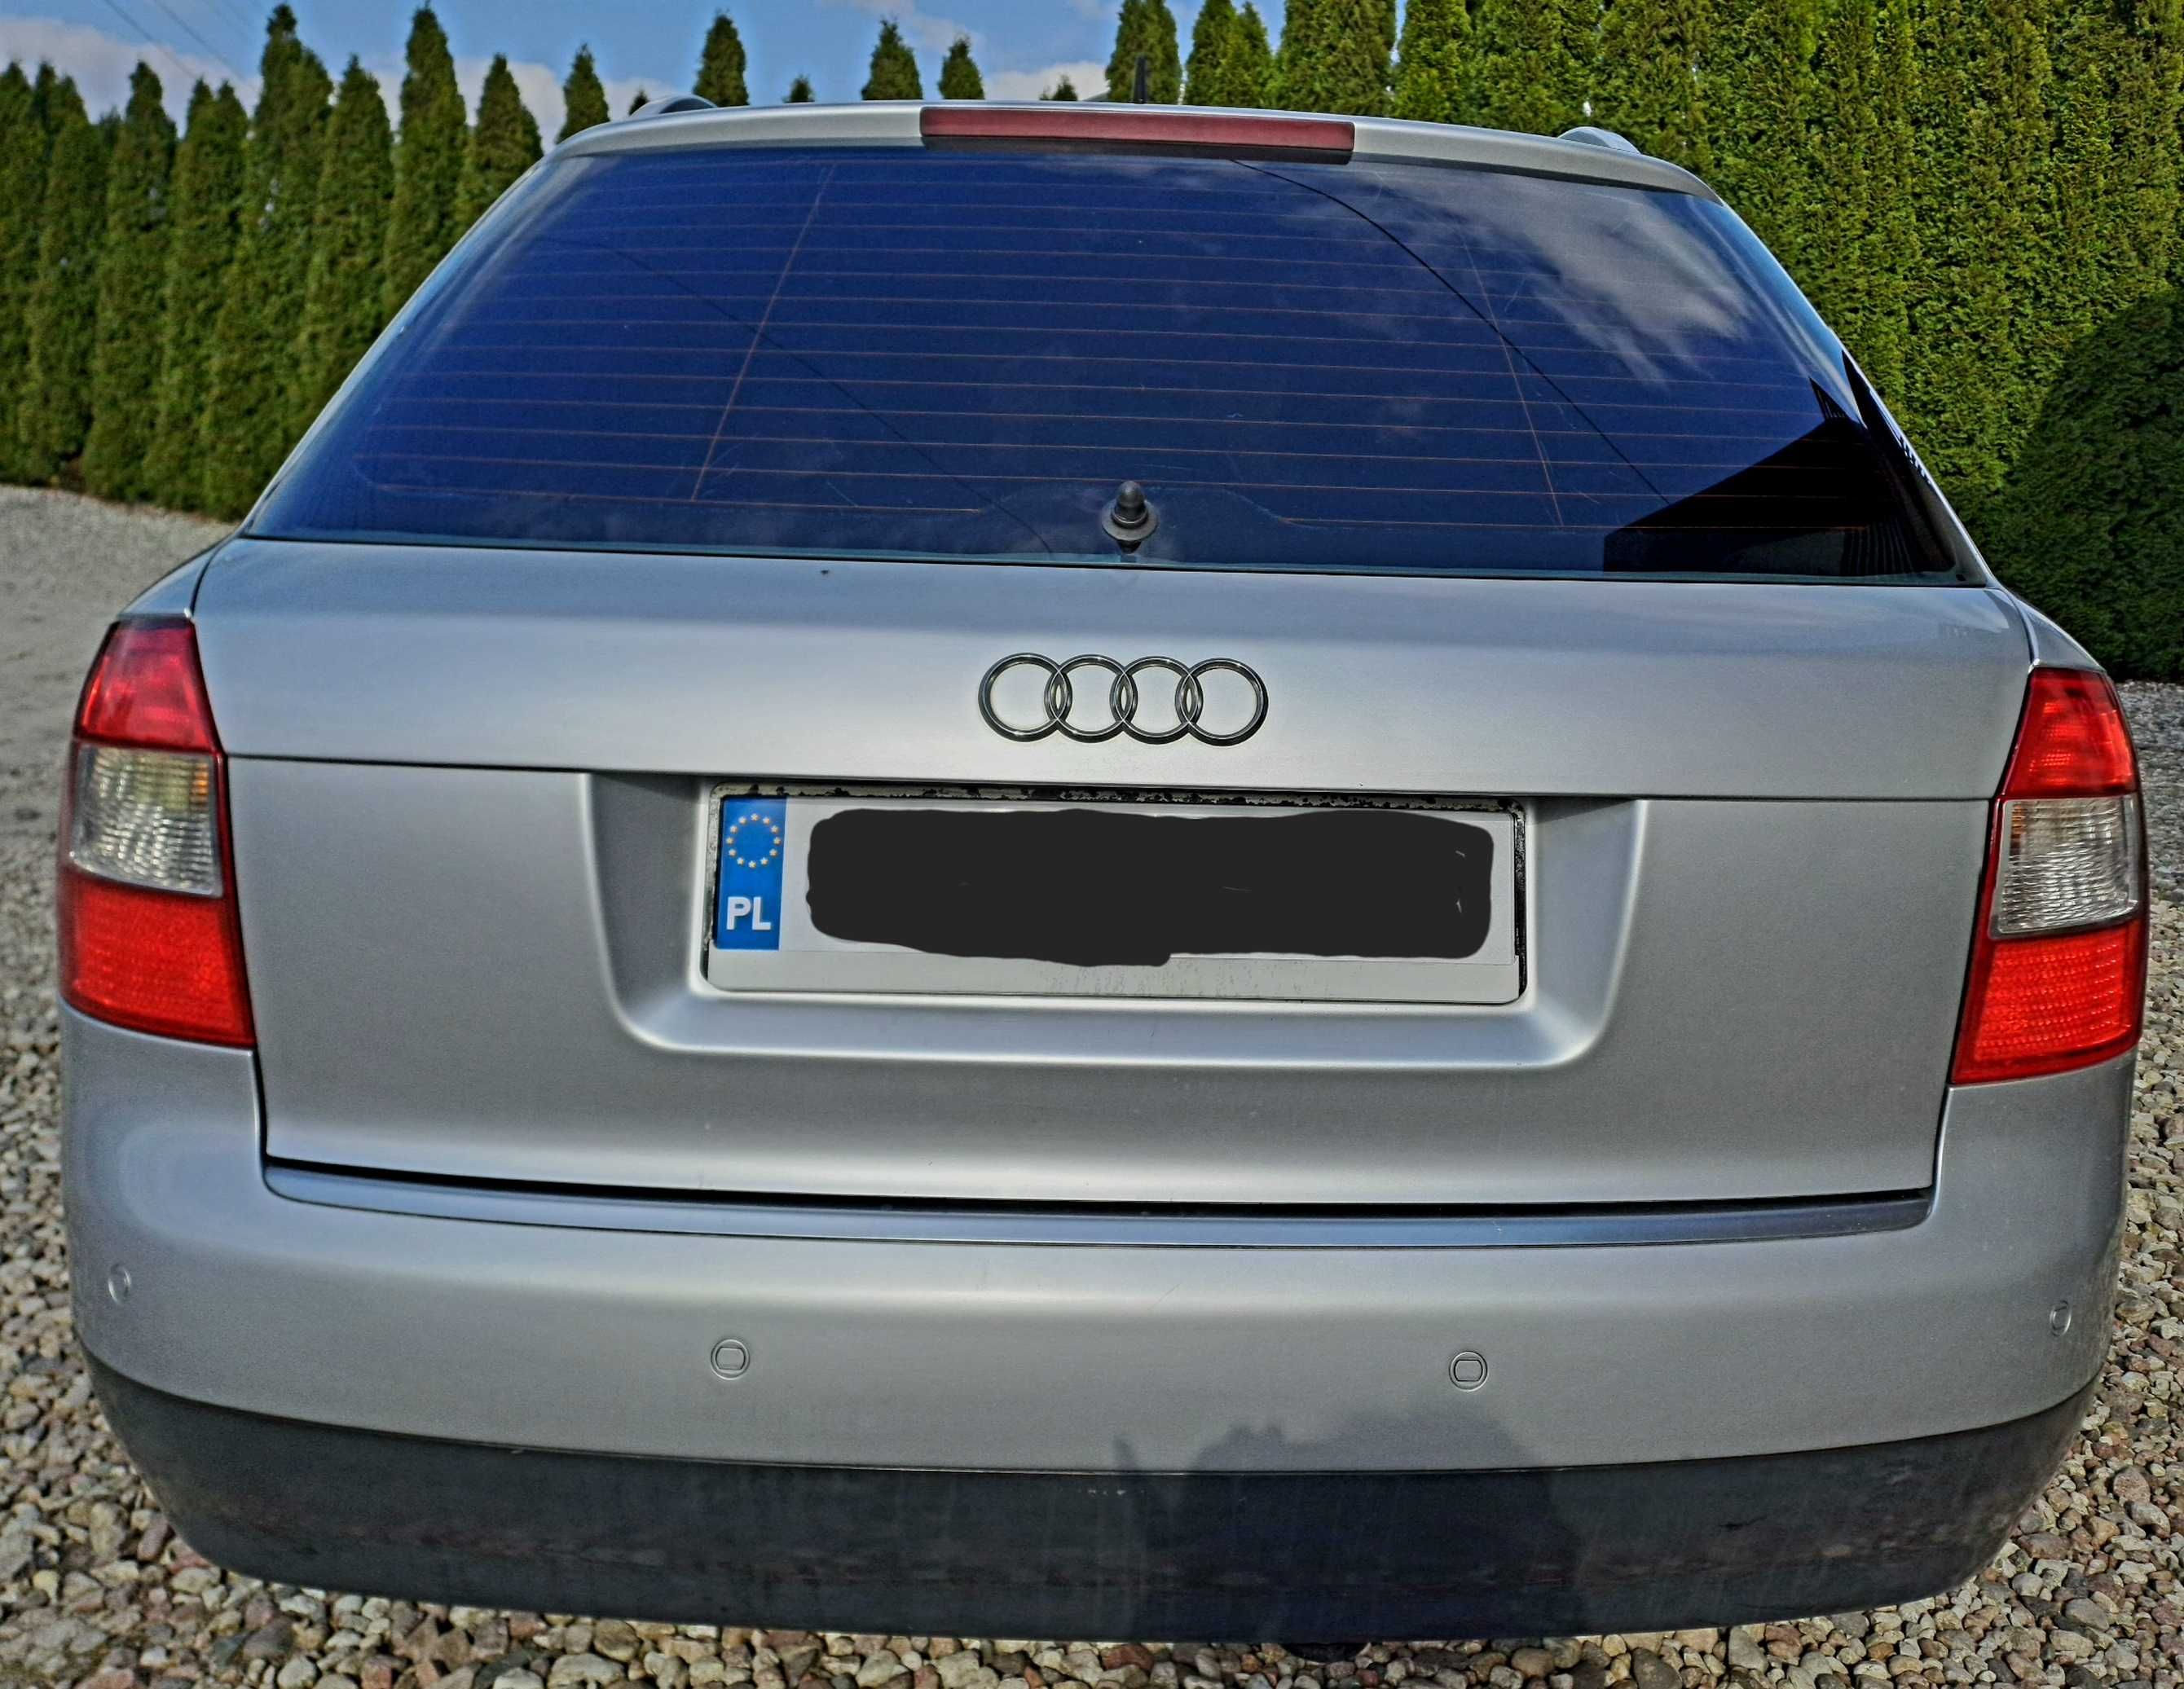 Audi A4*1.9TDI*130KM*2002/2003r.*klimatyzacja*zarejestrowana